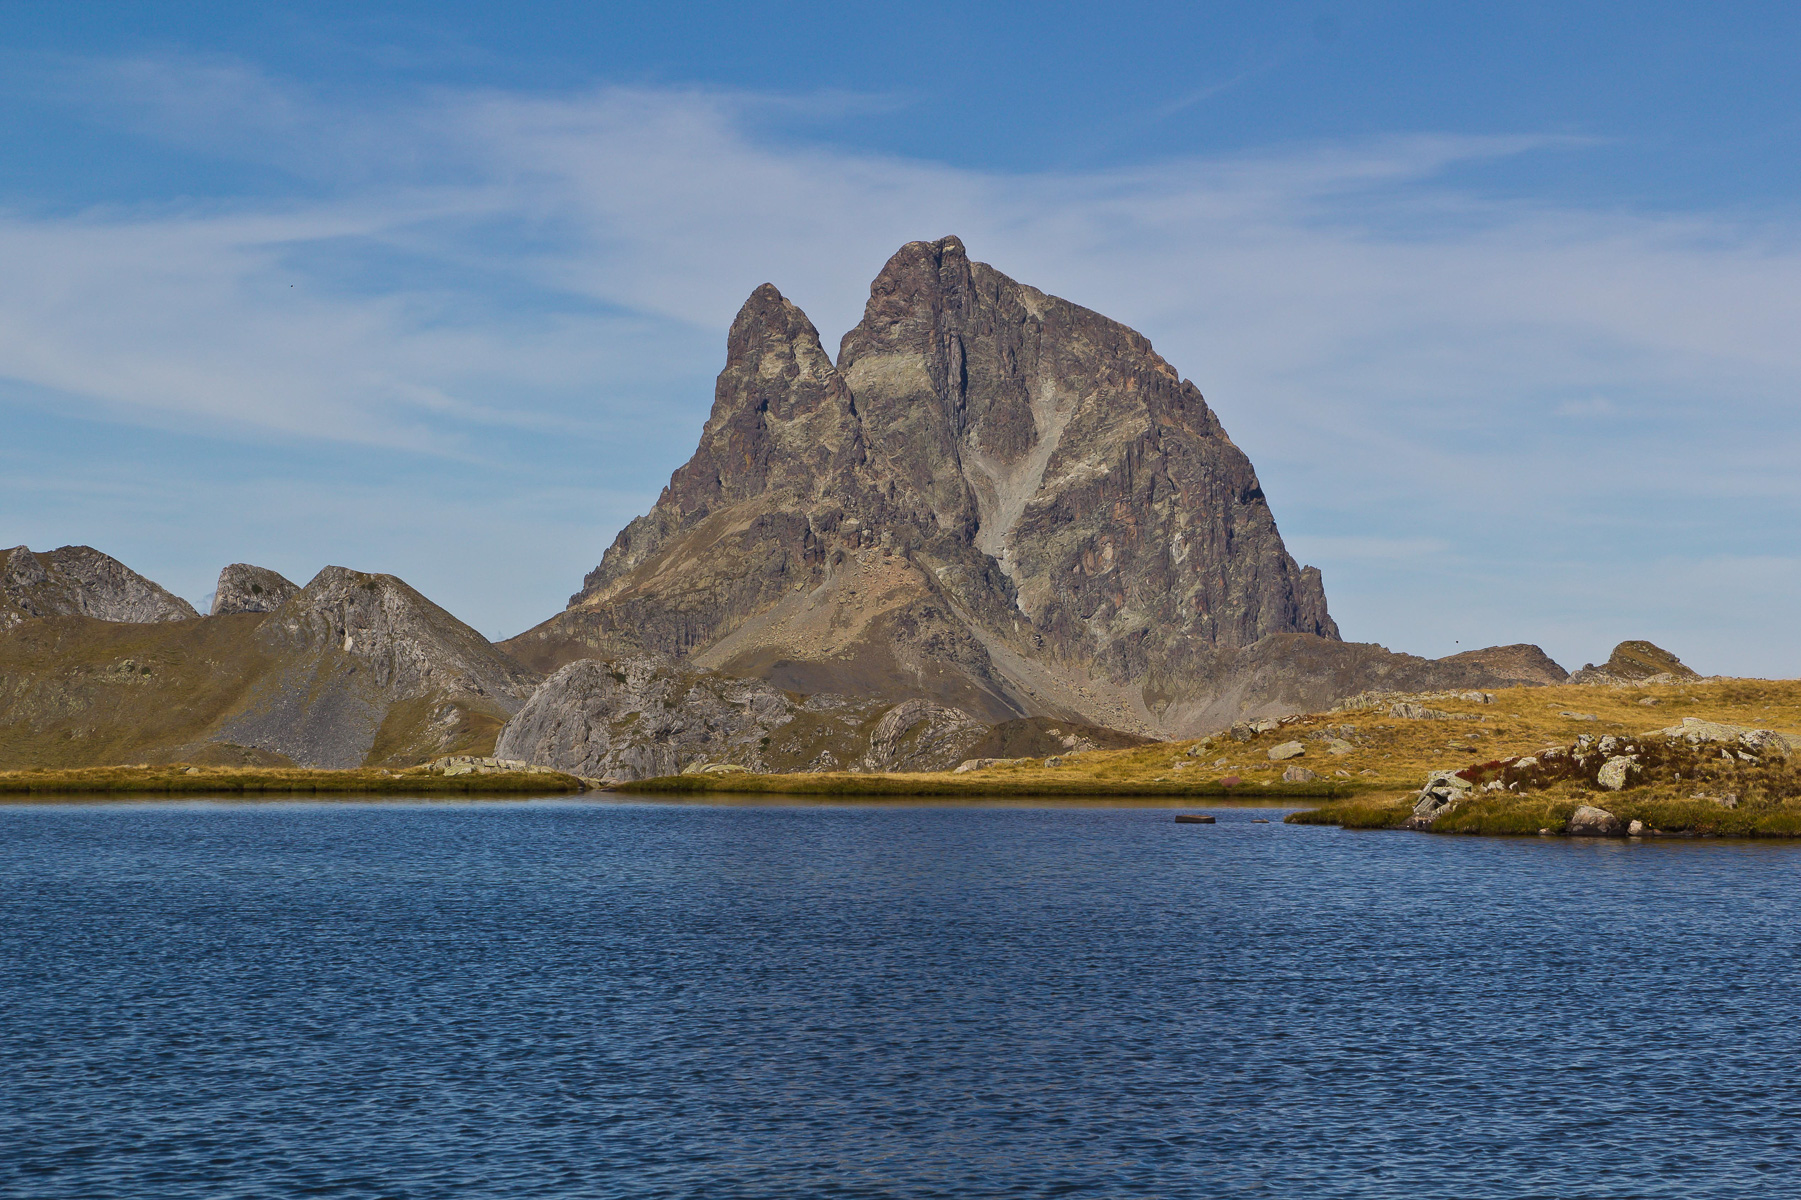 Der berühmte Blick zeigt den schönen Berg über dem idyllischen See.